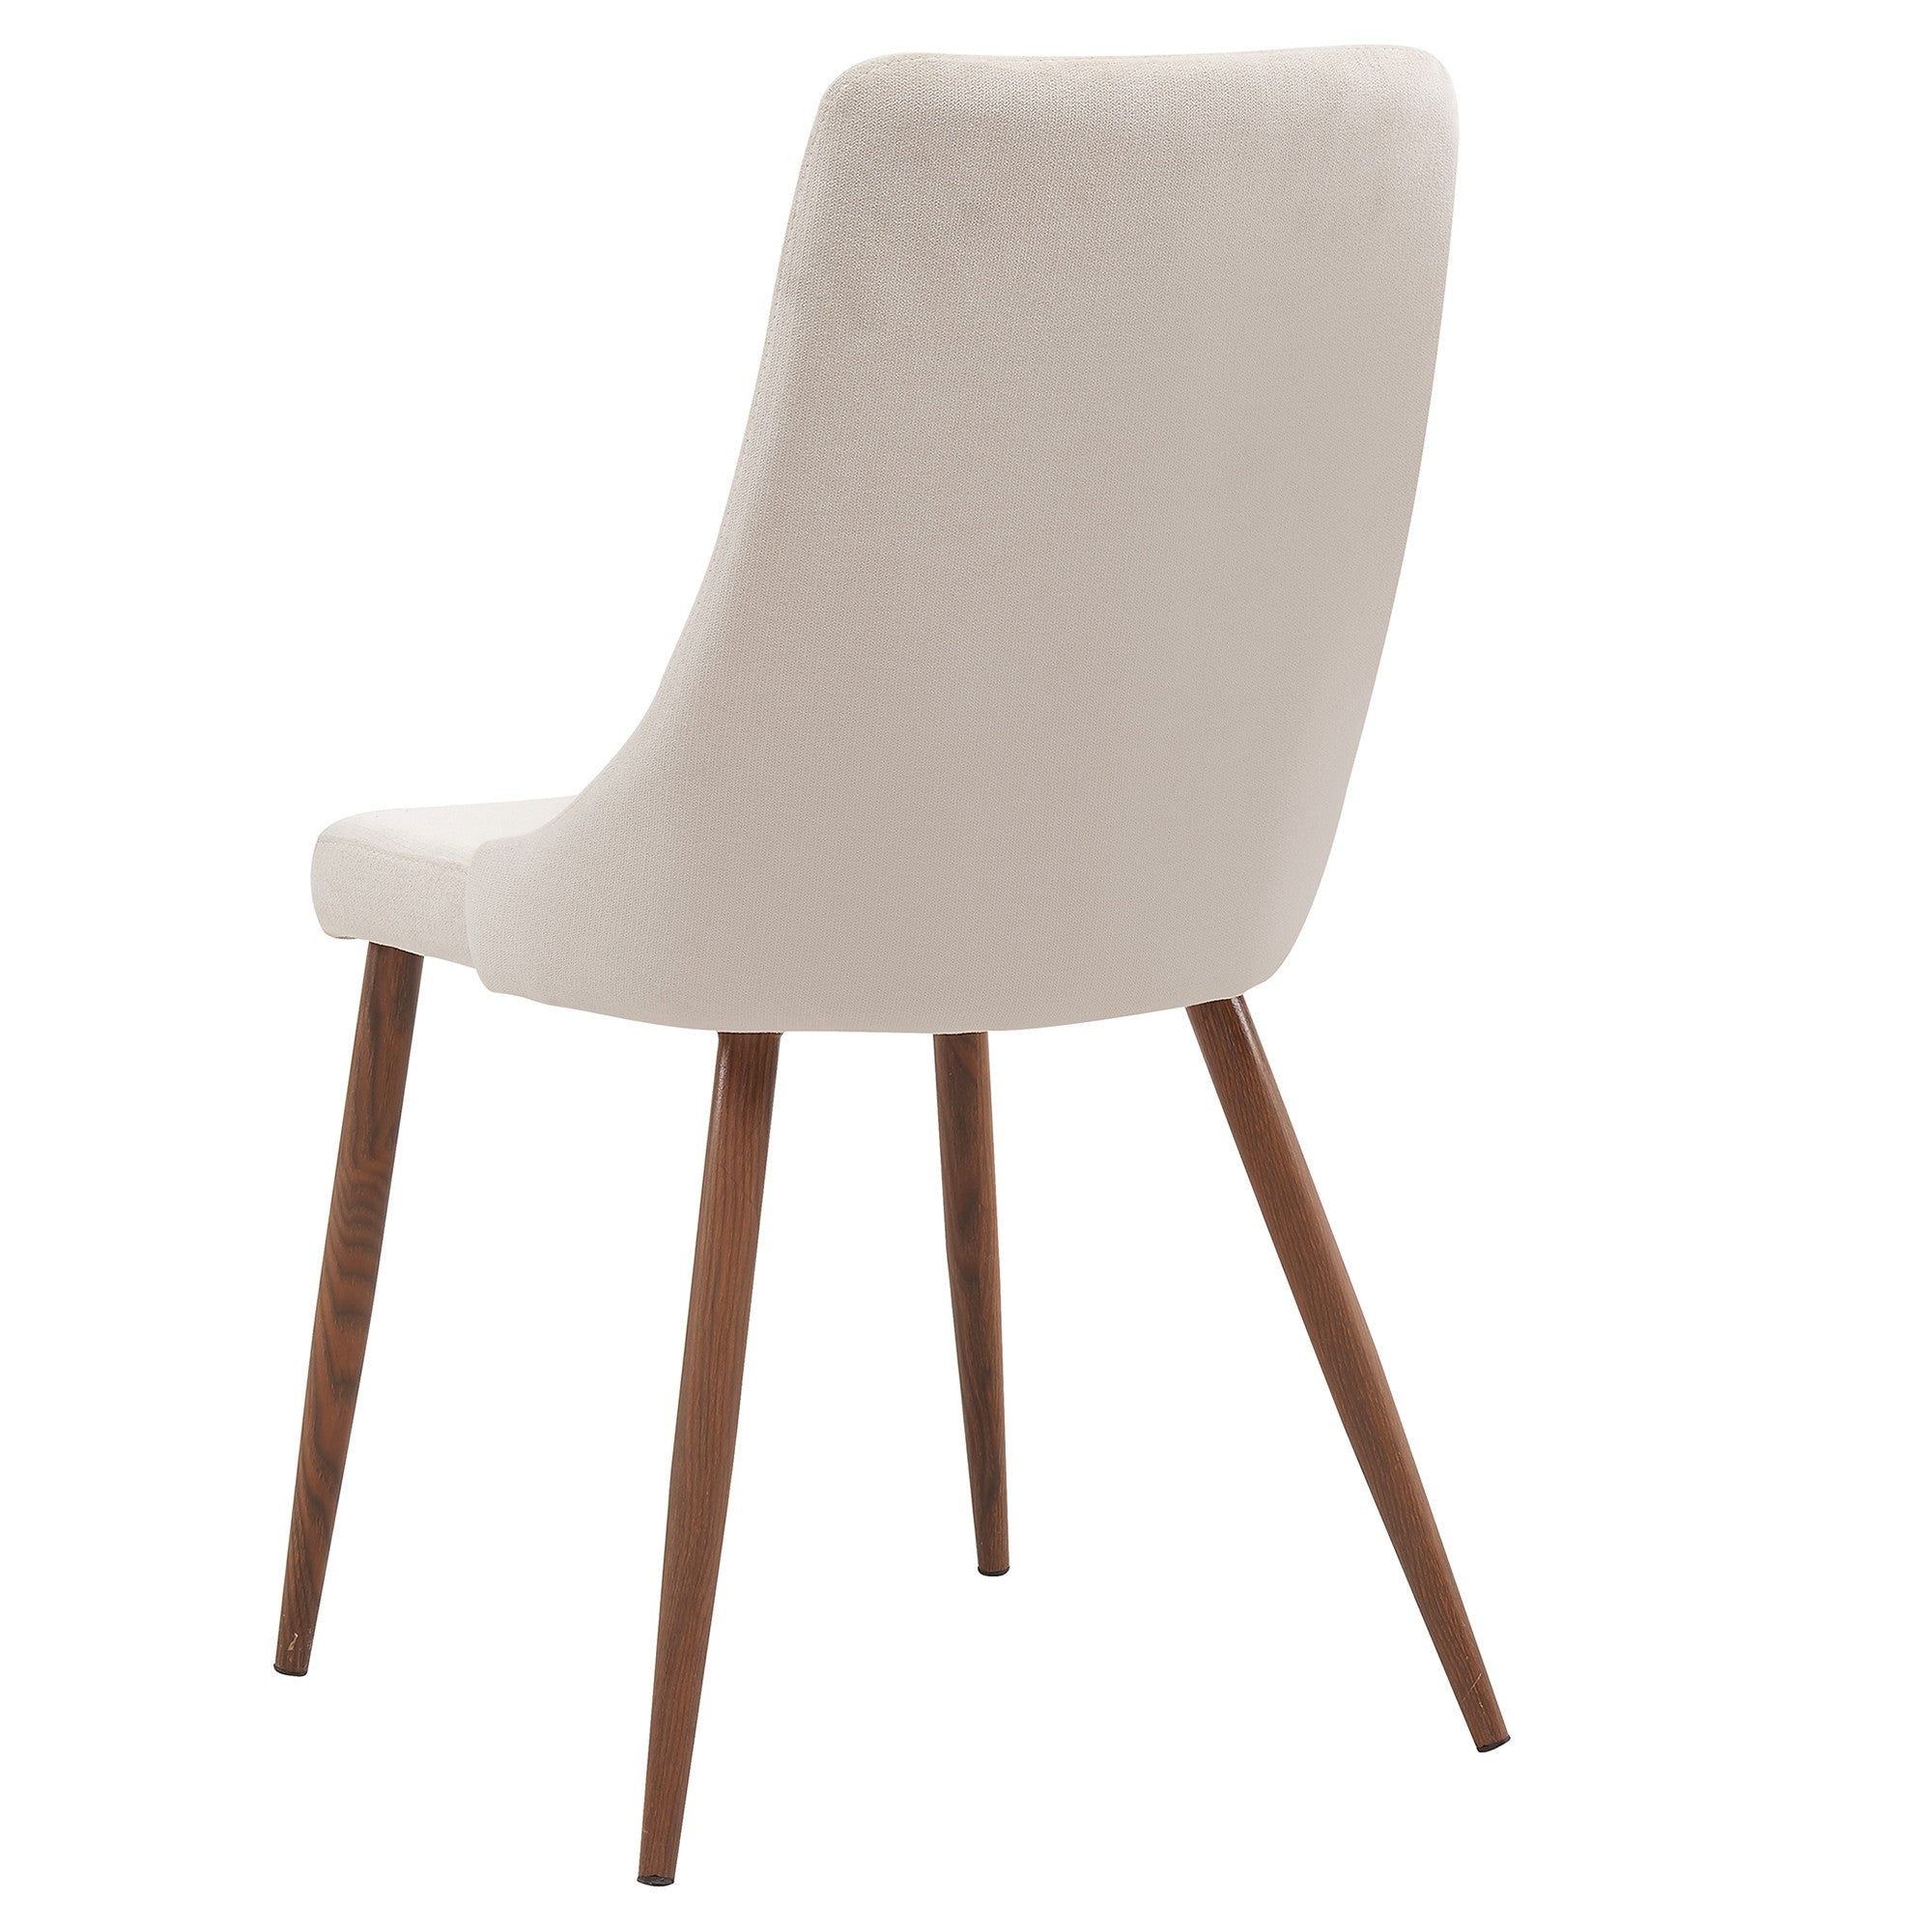 Cora Side Chair in Beige, Set of 2 - Worldwide Homefurnishings Inc